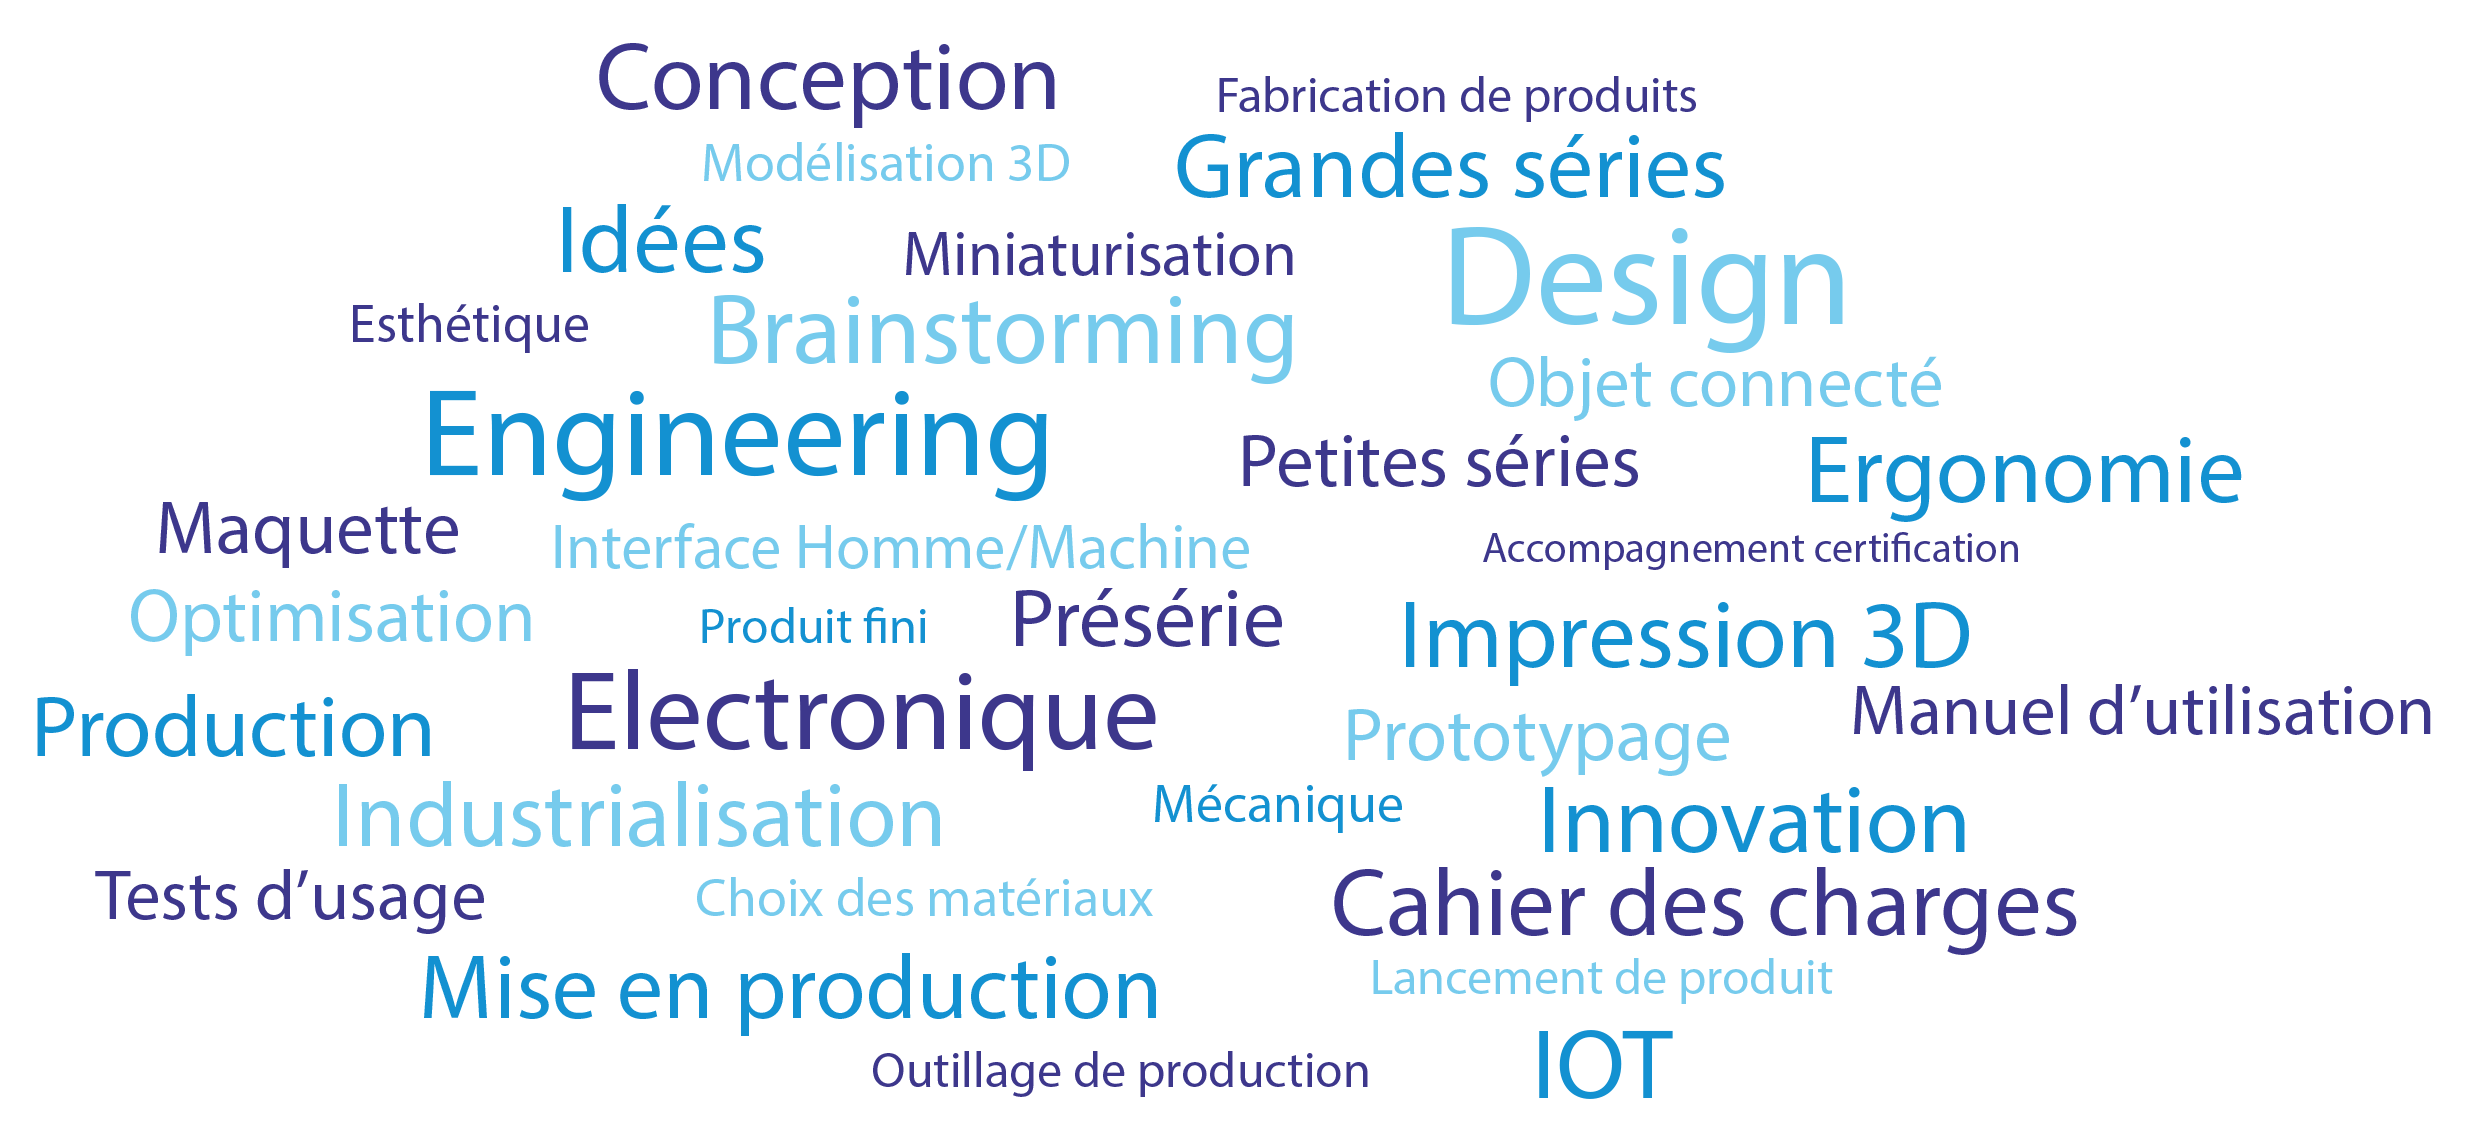 Développement électronique et mécanique, design industriel, fabrication de produit, impression 3d, industrialisation, IOT, objet connecté